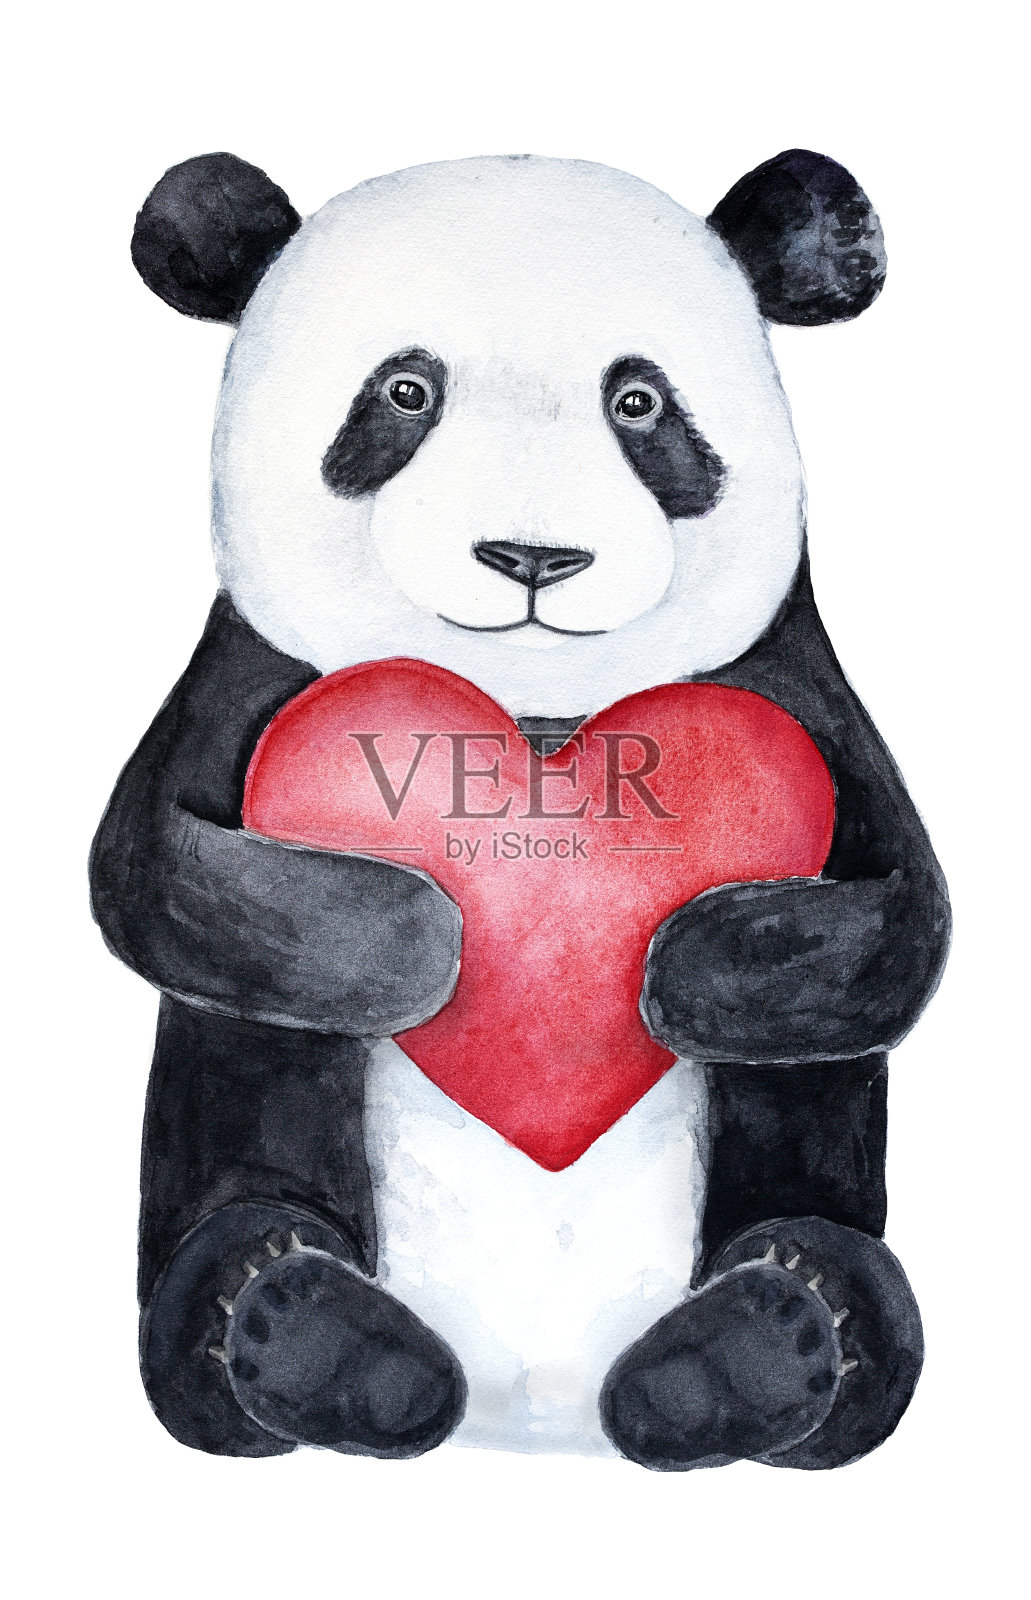 可爱的小熊猫泰迪熊抱着一颗大大的红心。设计元素图片